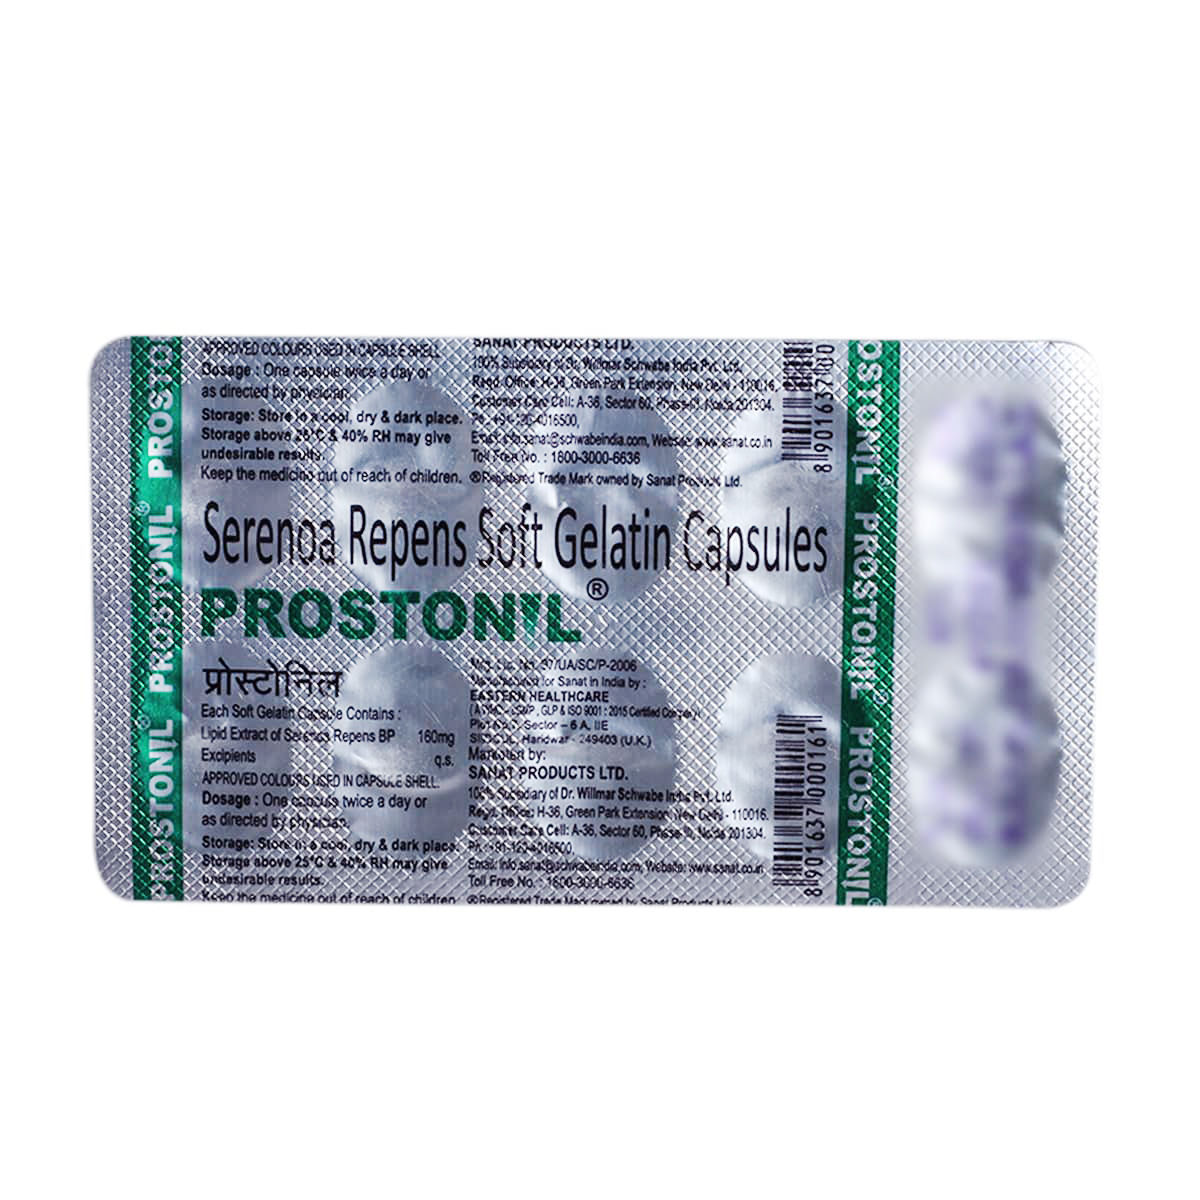 Prostonil Capsule, Pack of 10 CapsuleS